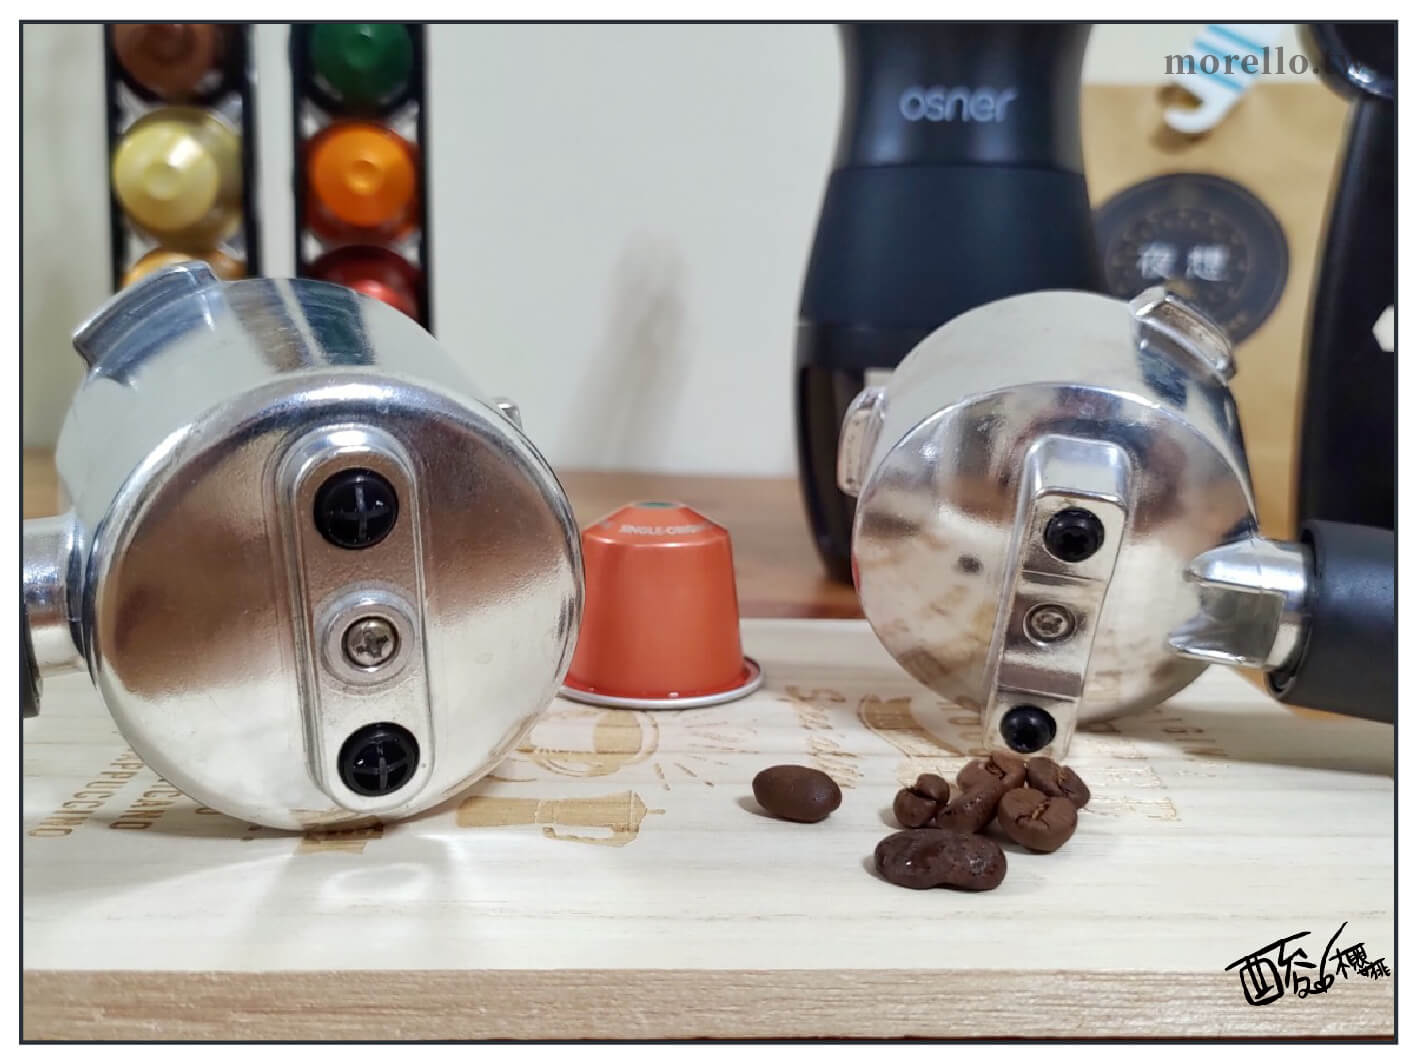 YIRGA CLASSIC 半自動義式咖啡機 的義式咖啡手柄與膠囊咖啡手柄皆可一次做兩杯咖啡